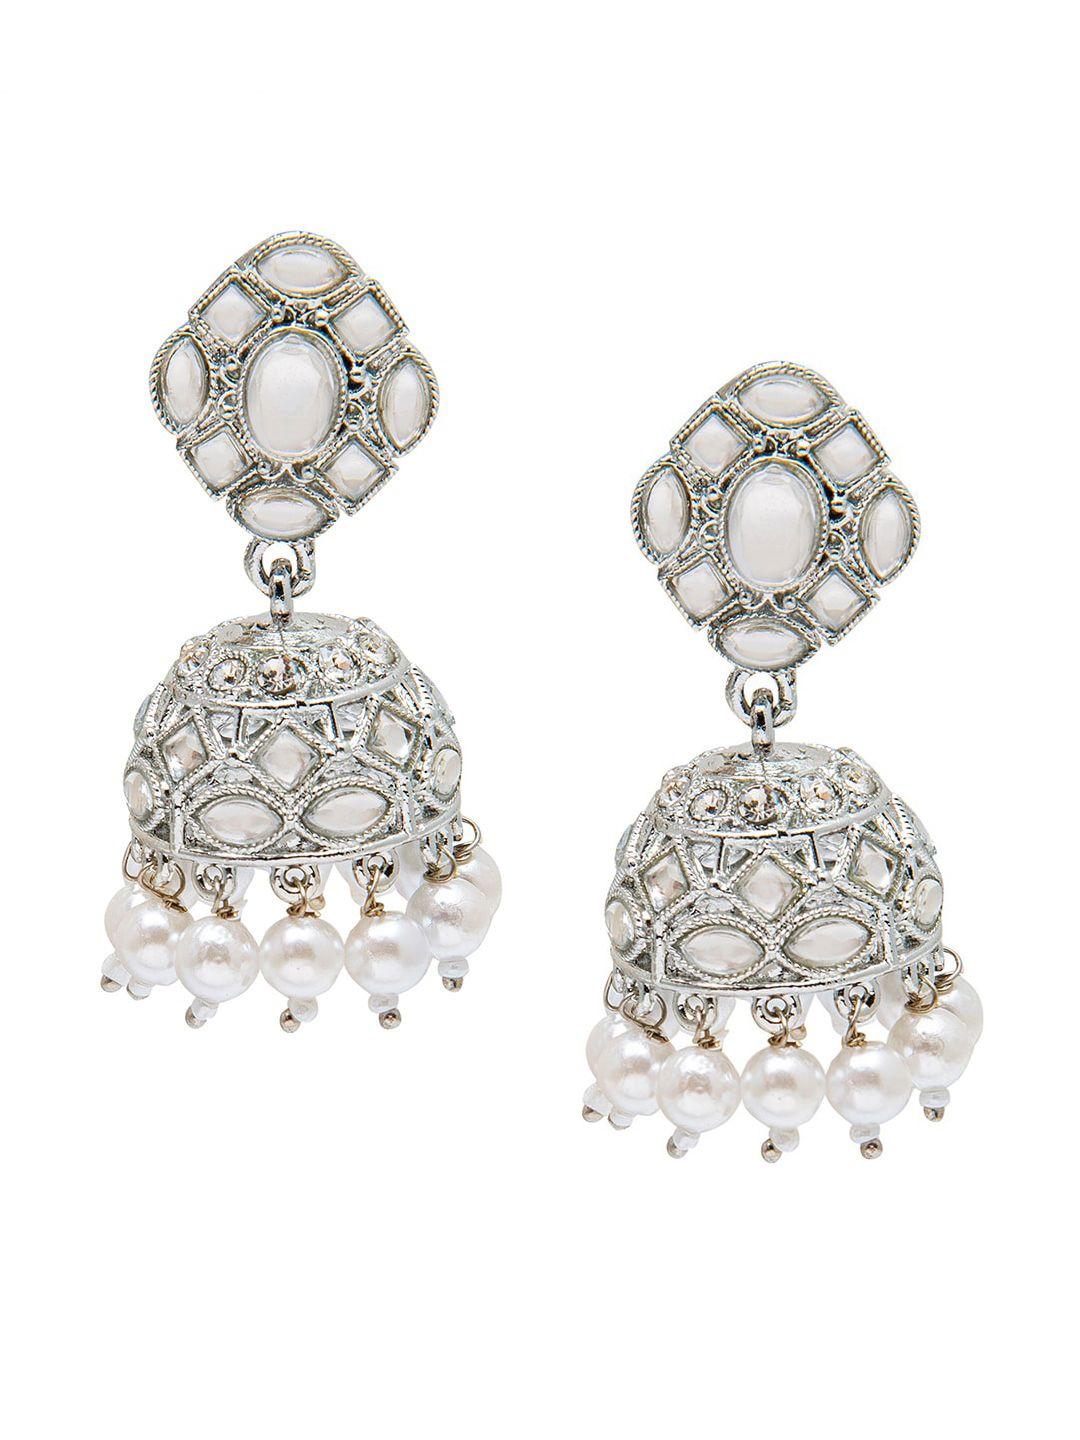 shining jewel - by shivansh women silver-toned dome shaped jhumkas earrings